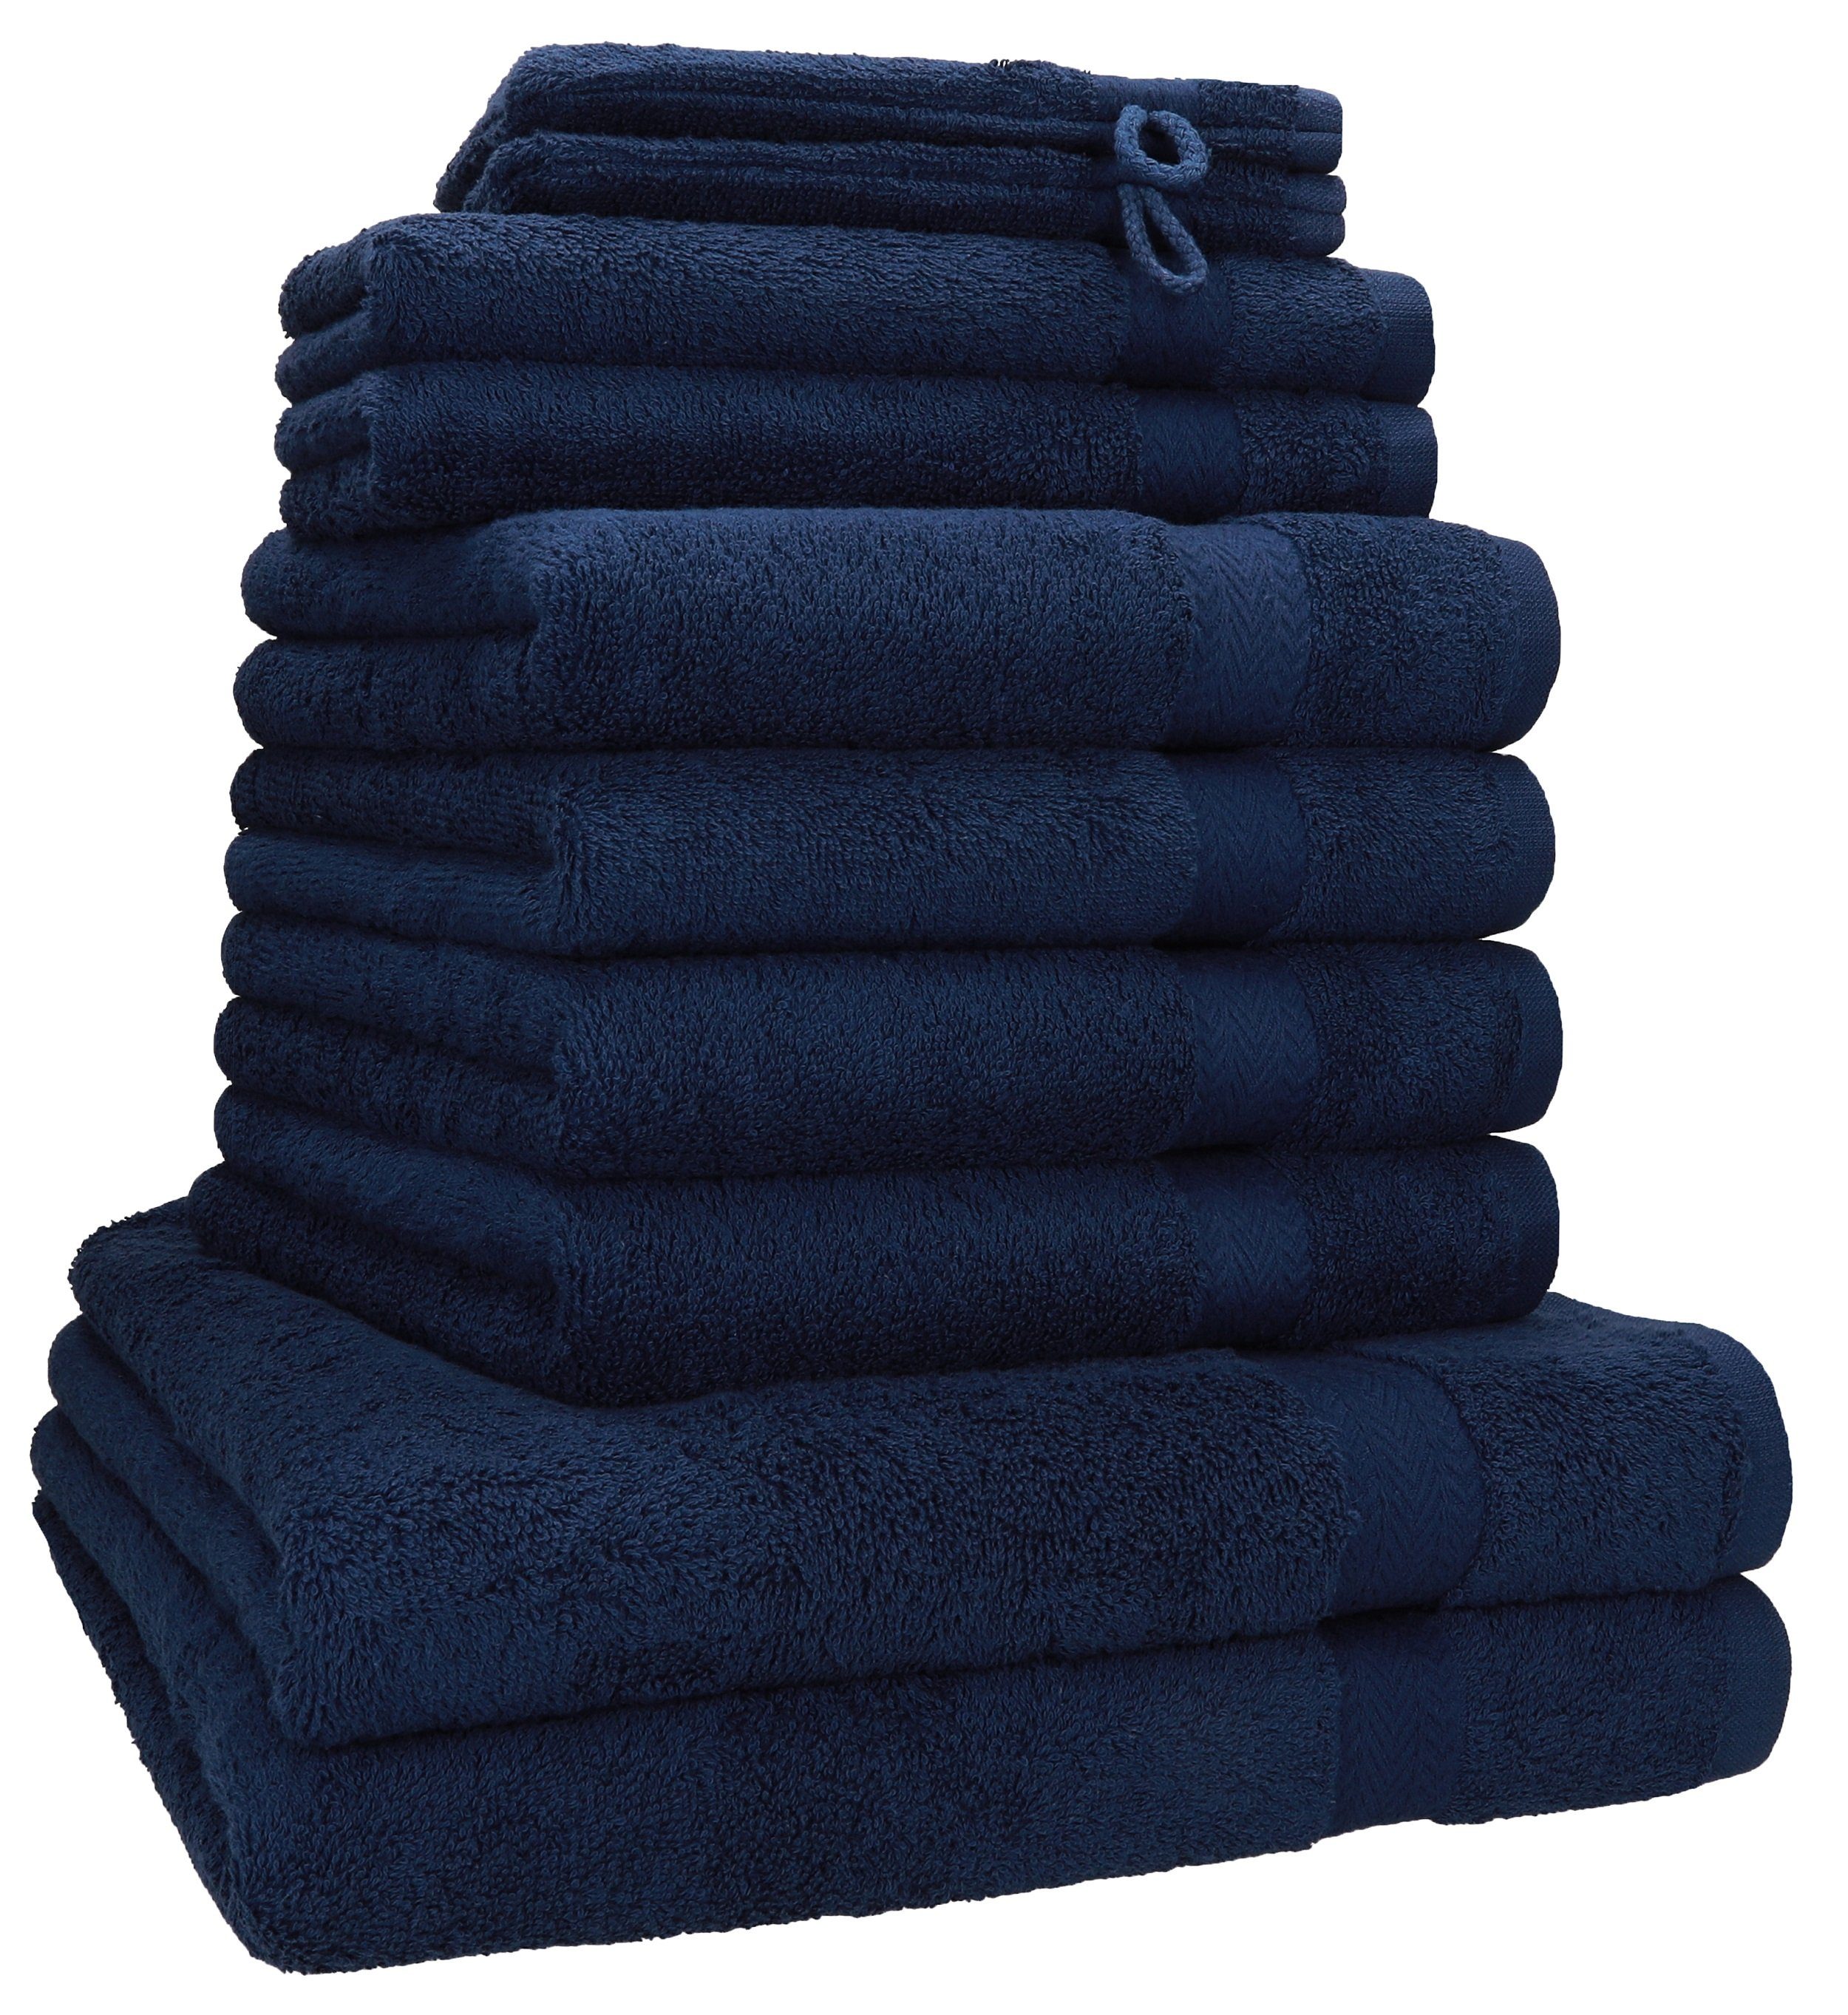 Handtuch-Set in blau online kaufen | OTTO